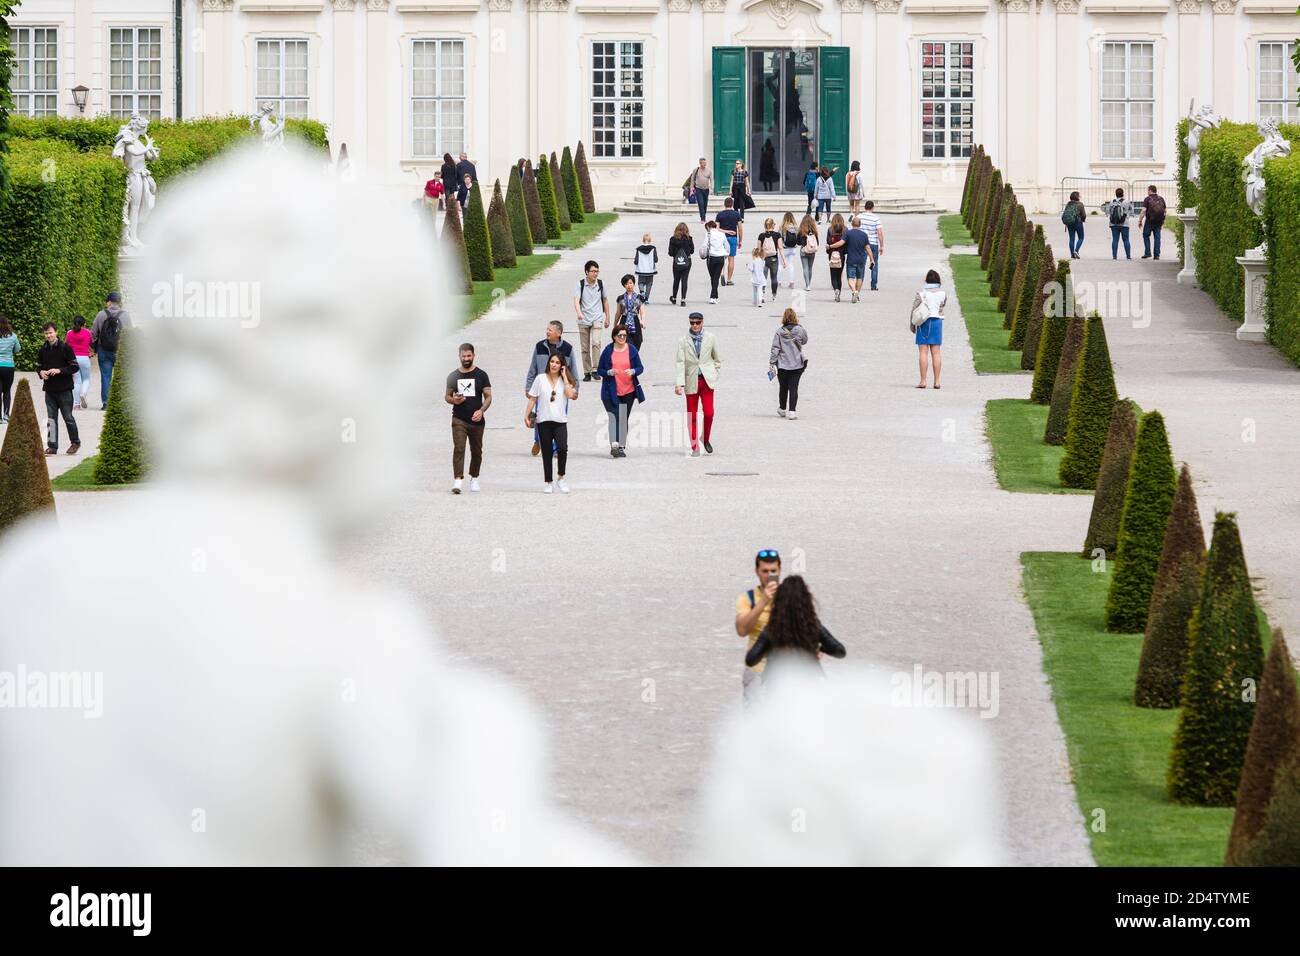 WIEN - 5. MAI: Über die Schulteransicht einer Statue zum Unteren Belvedere im Schlosspark Belvedere in Wien, Österreich mit einigen Touristen im ga Stockfoto